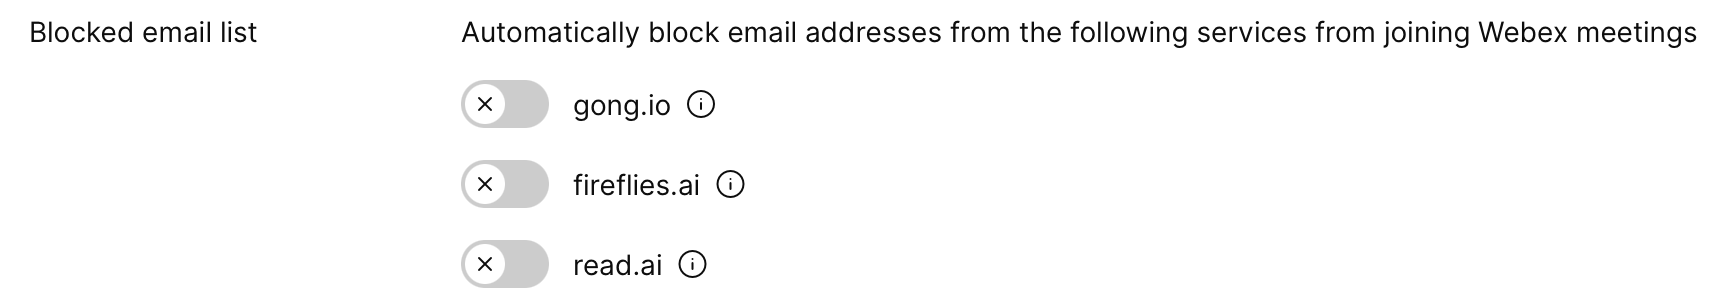 lista de correos bloqueados